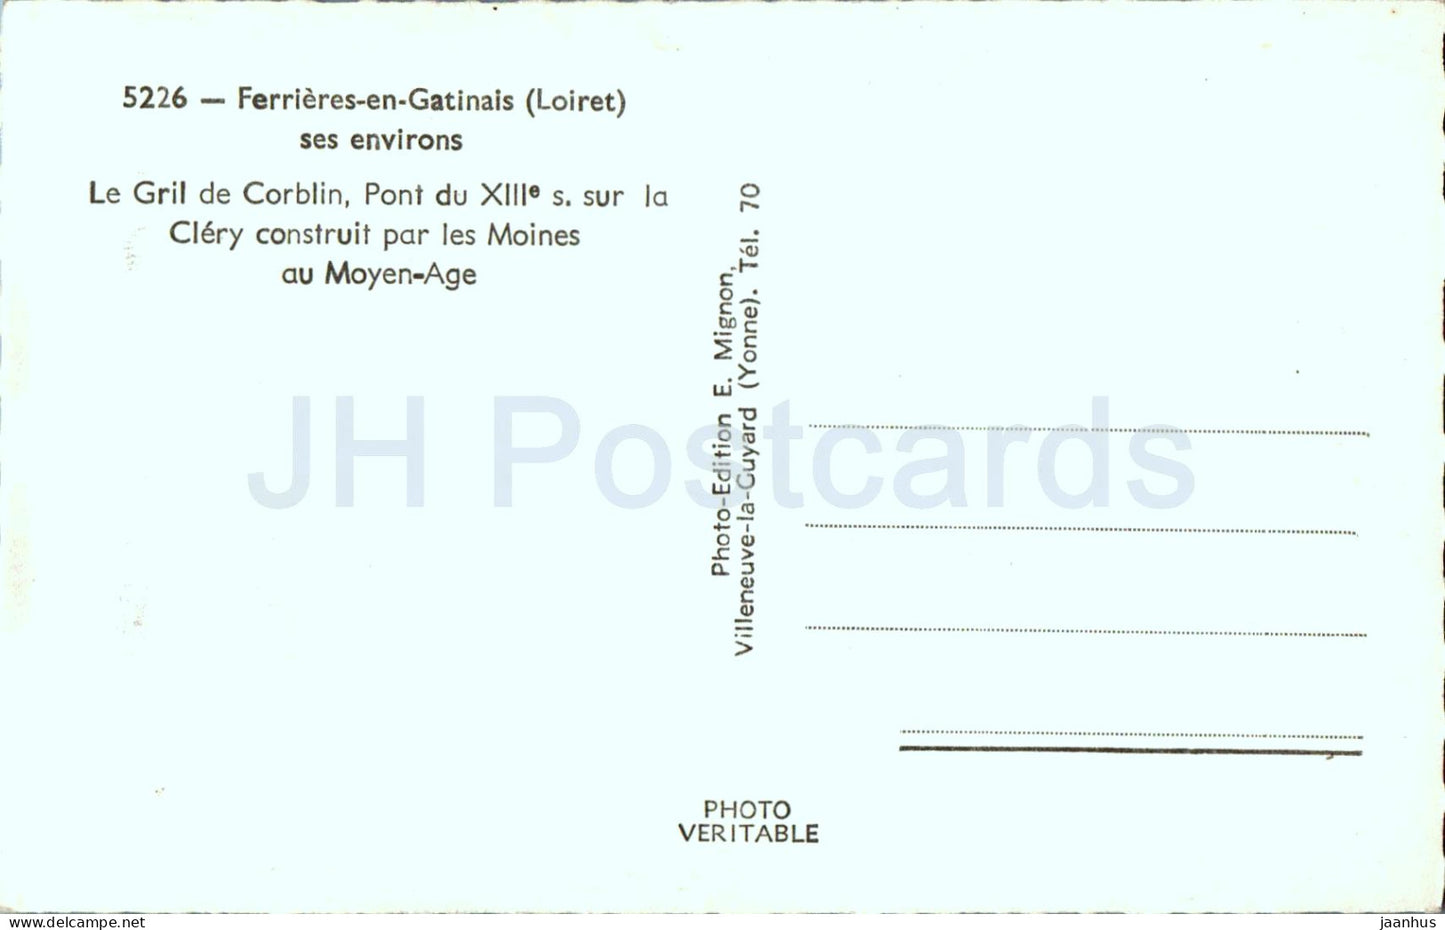 Ferrieres en Gatinais - Le Gril de Corblin - pont - pont - 5226 - carte postale ancienne - France - inutilisée 